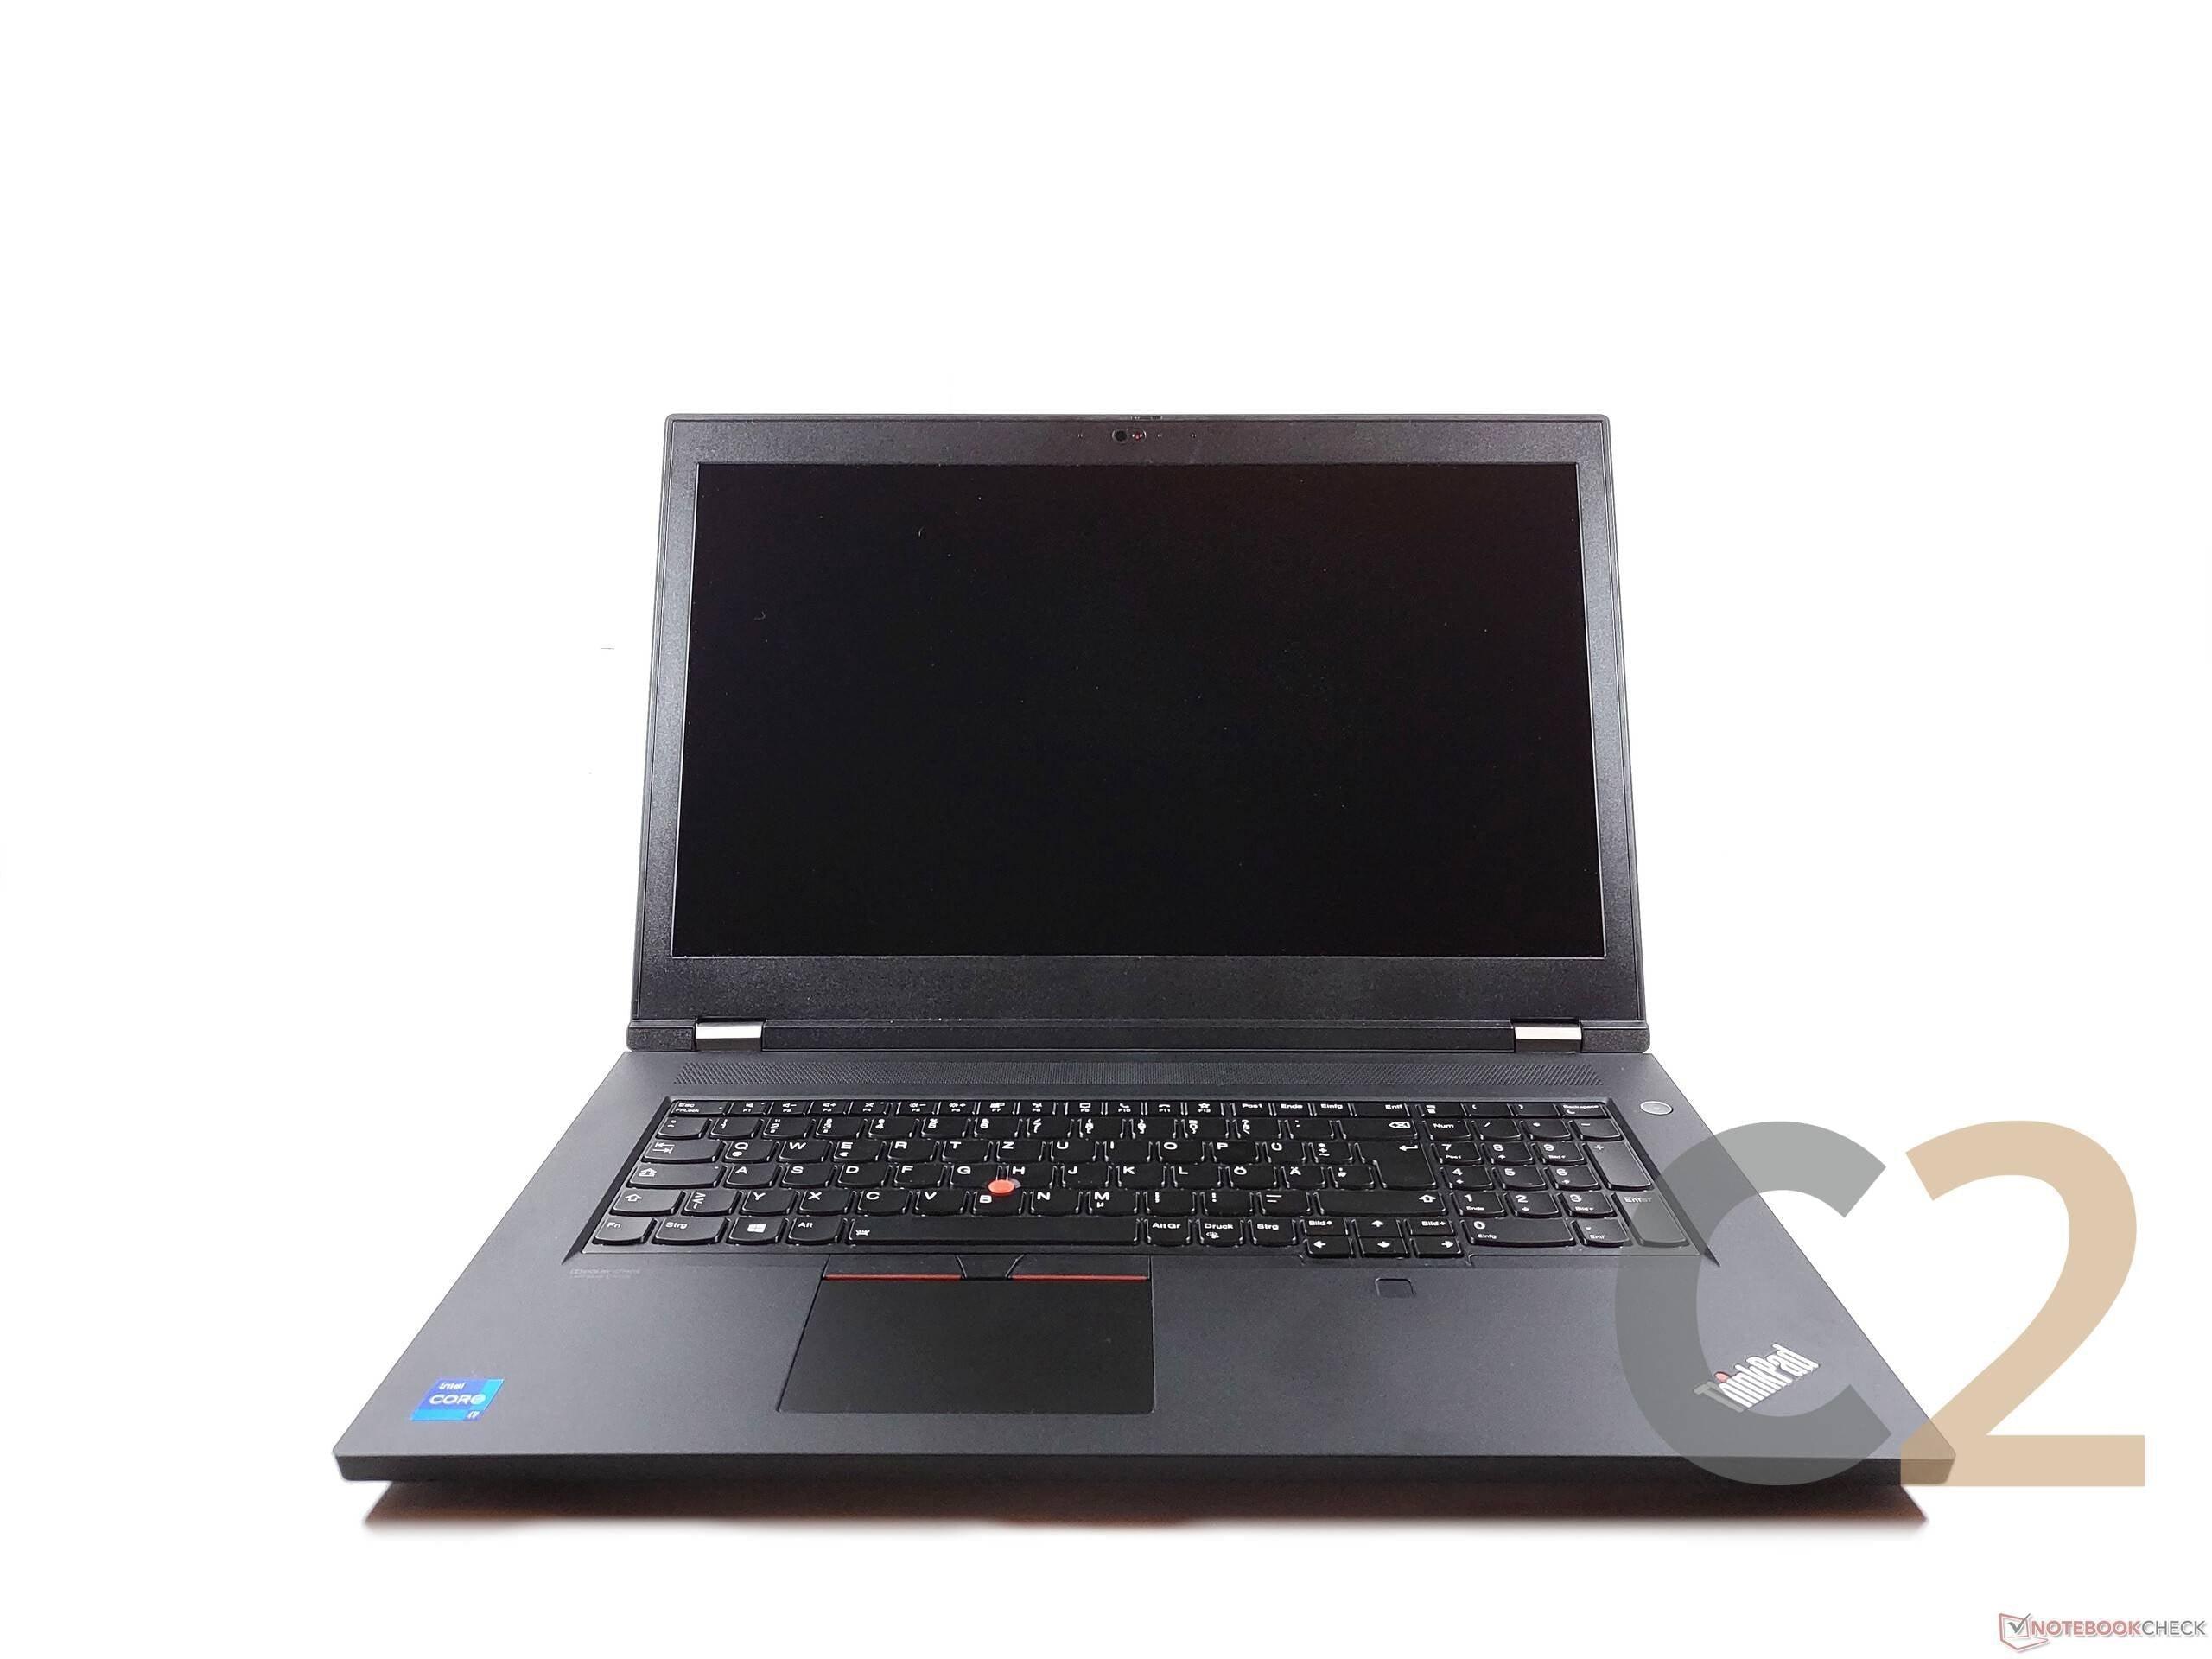 (NEW) LENOVO ThinkPad P17 G2 i7-11800H 16G 512-SSD NA Nvidia Quadro T1200 4GB 17.3inch 1920x1080 Mobile Workstation 100% - C2 Computer